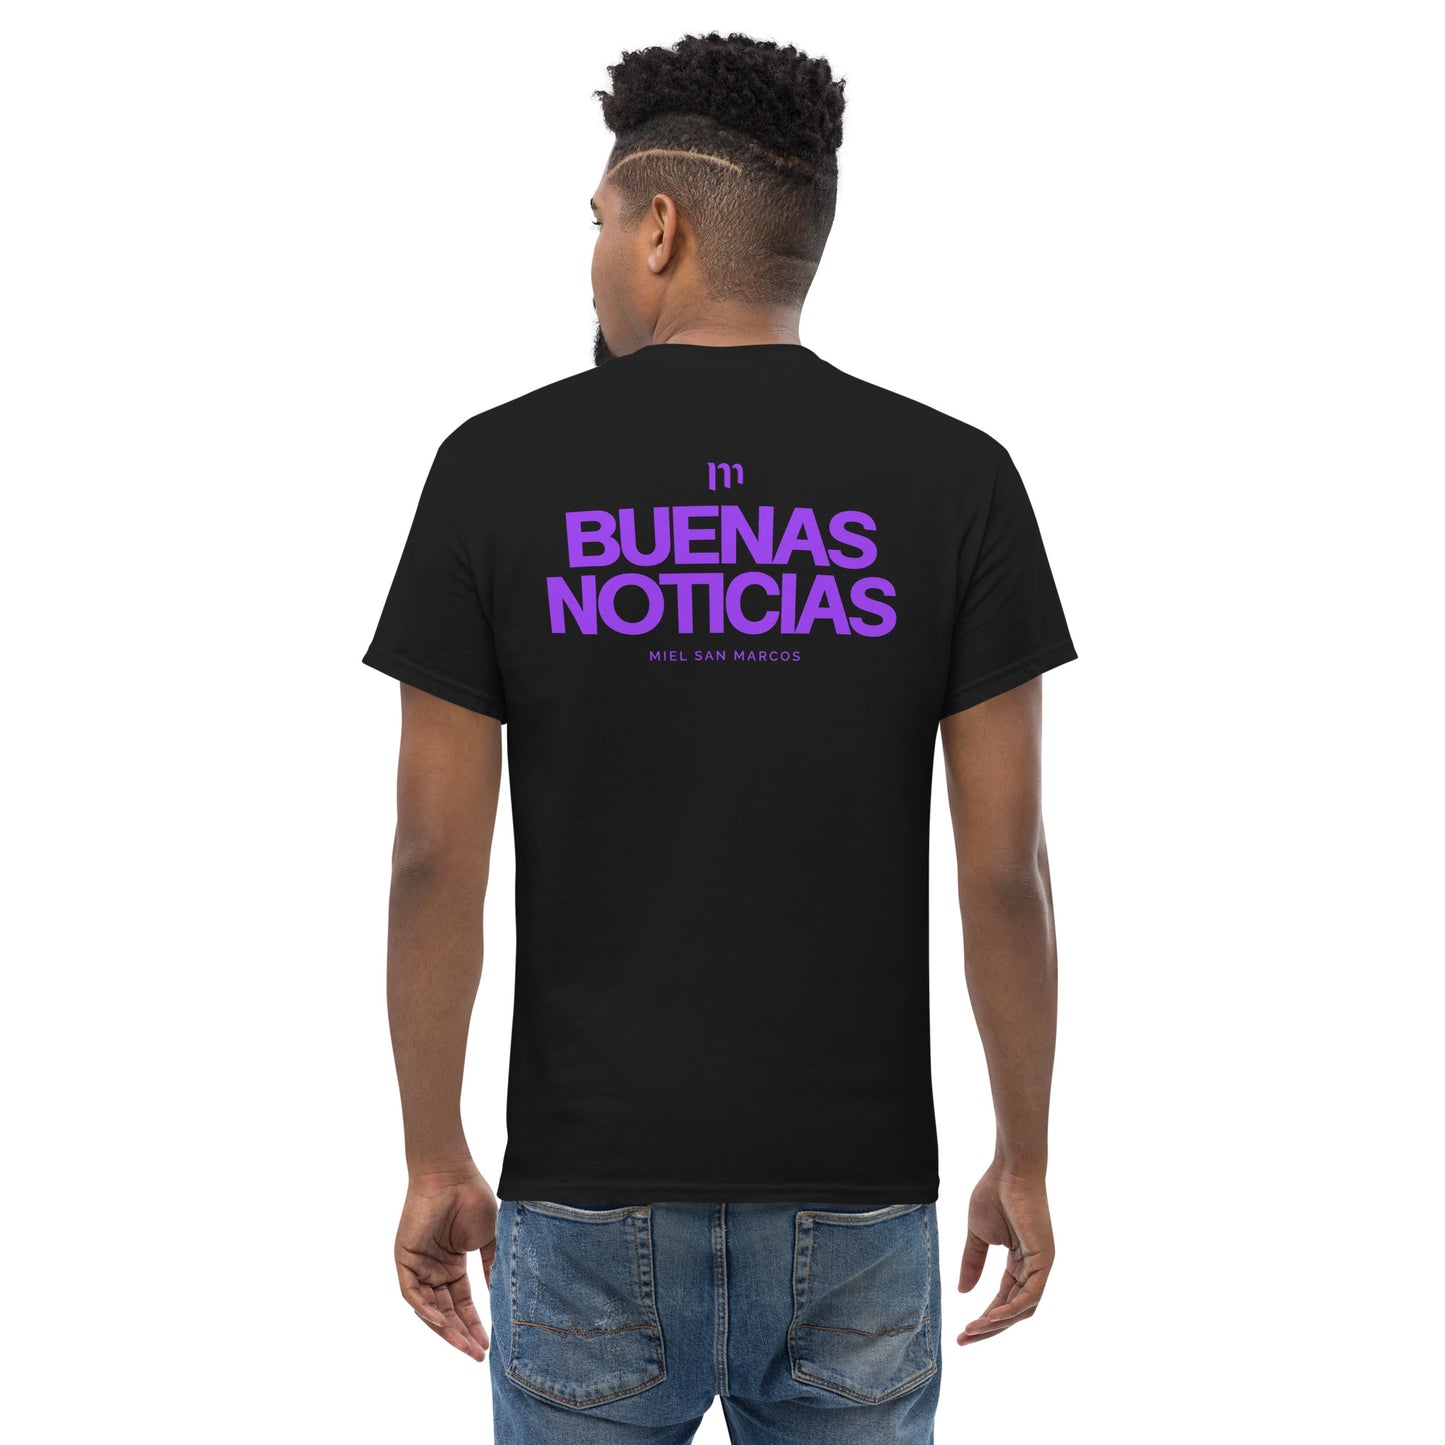 BUENAS NOTICIAS (Morado) - Camiseta manga corta Miel San Marcos